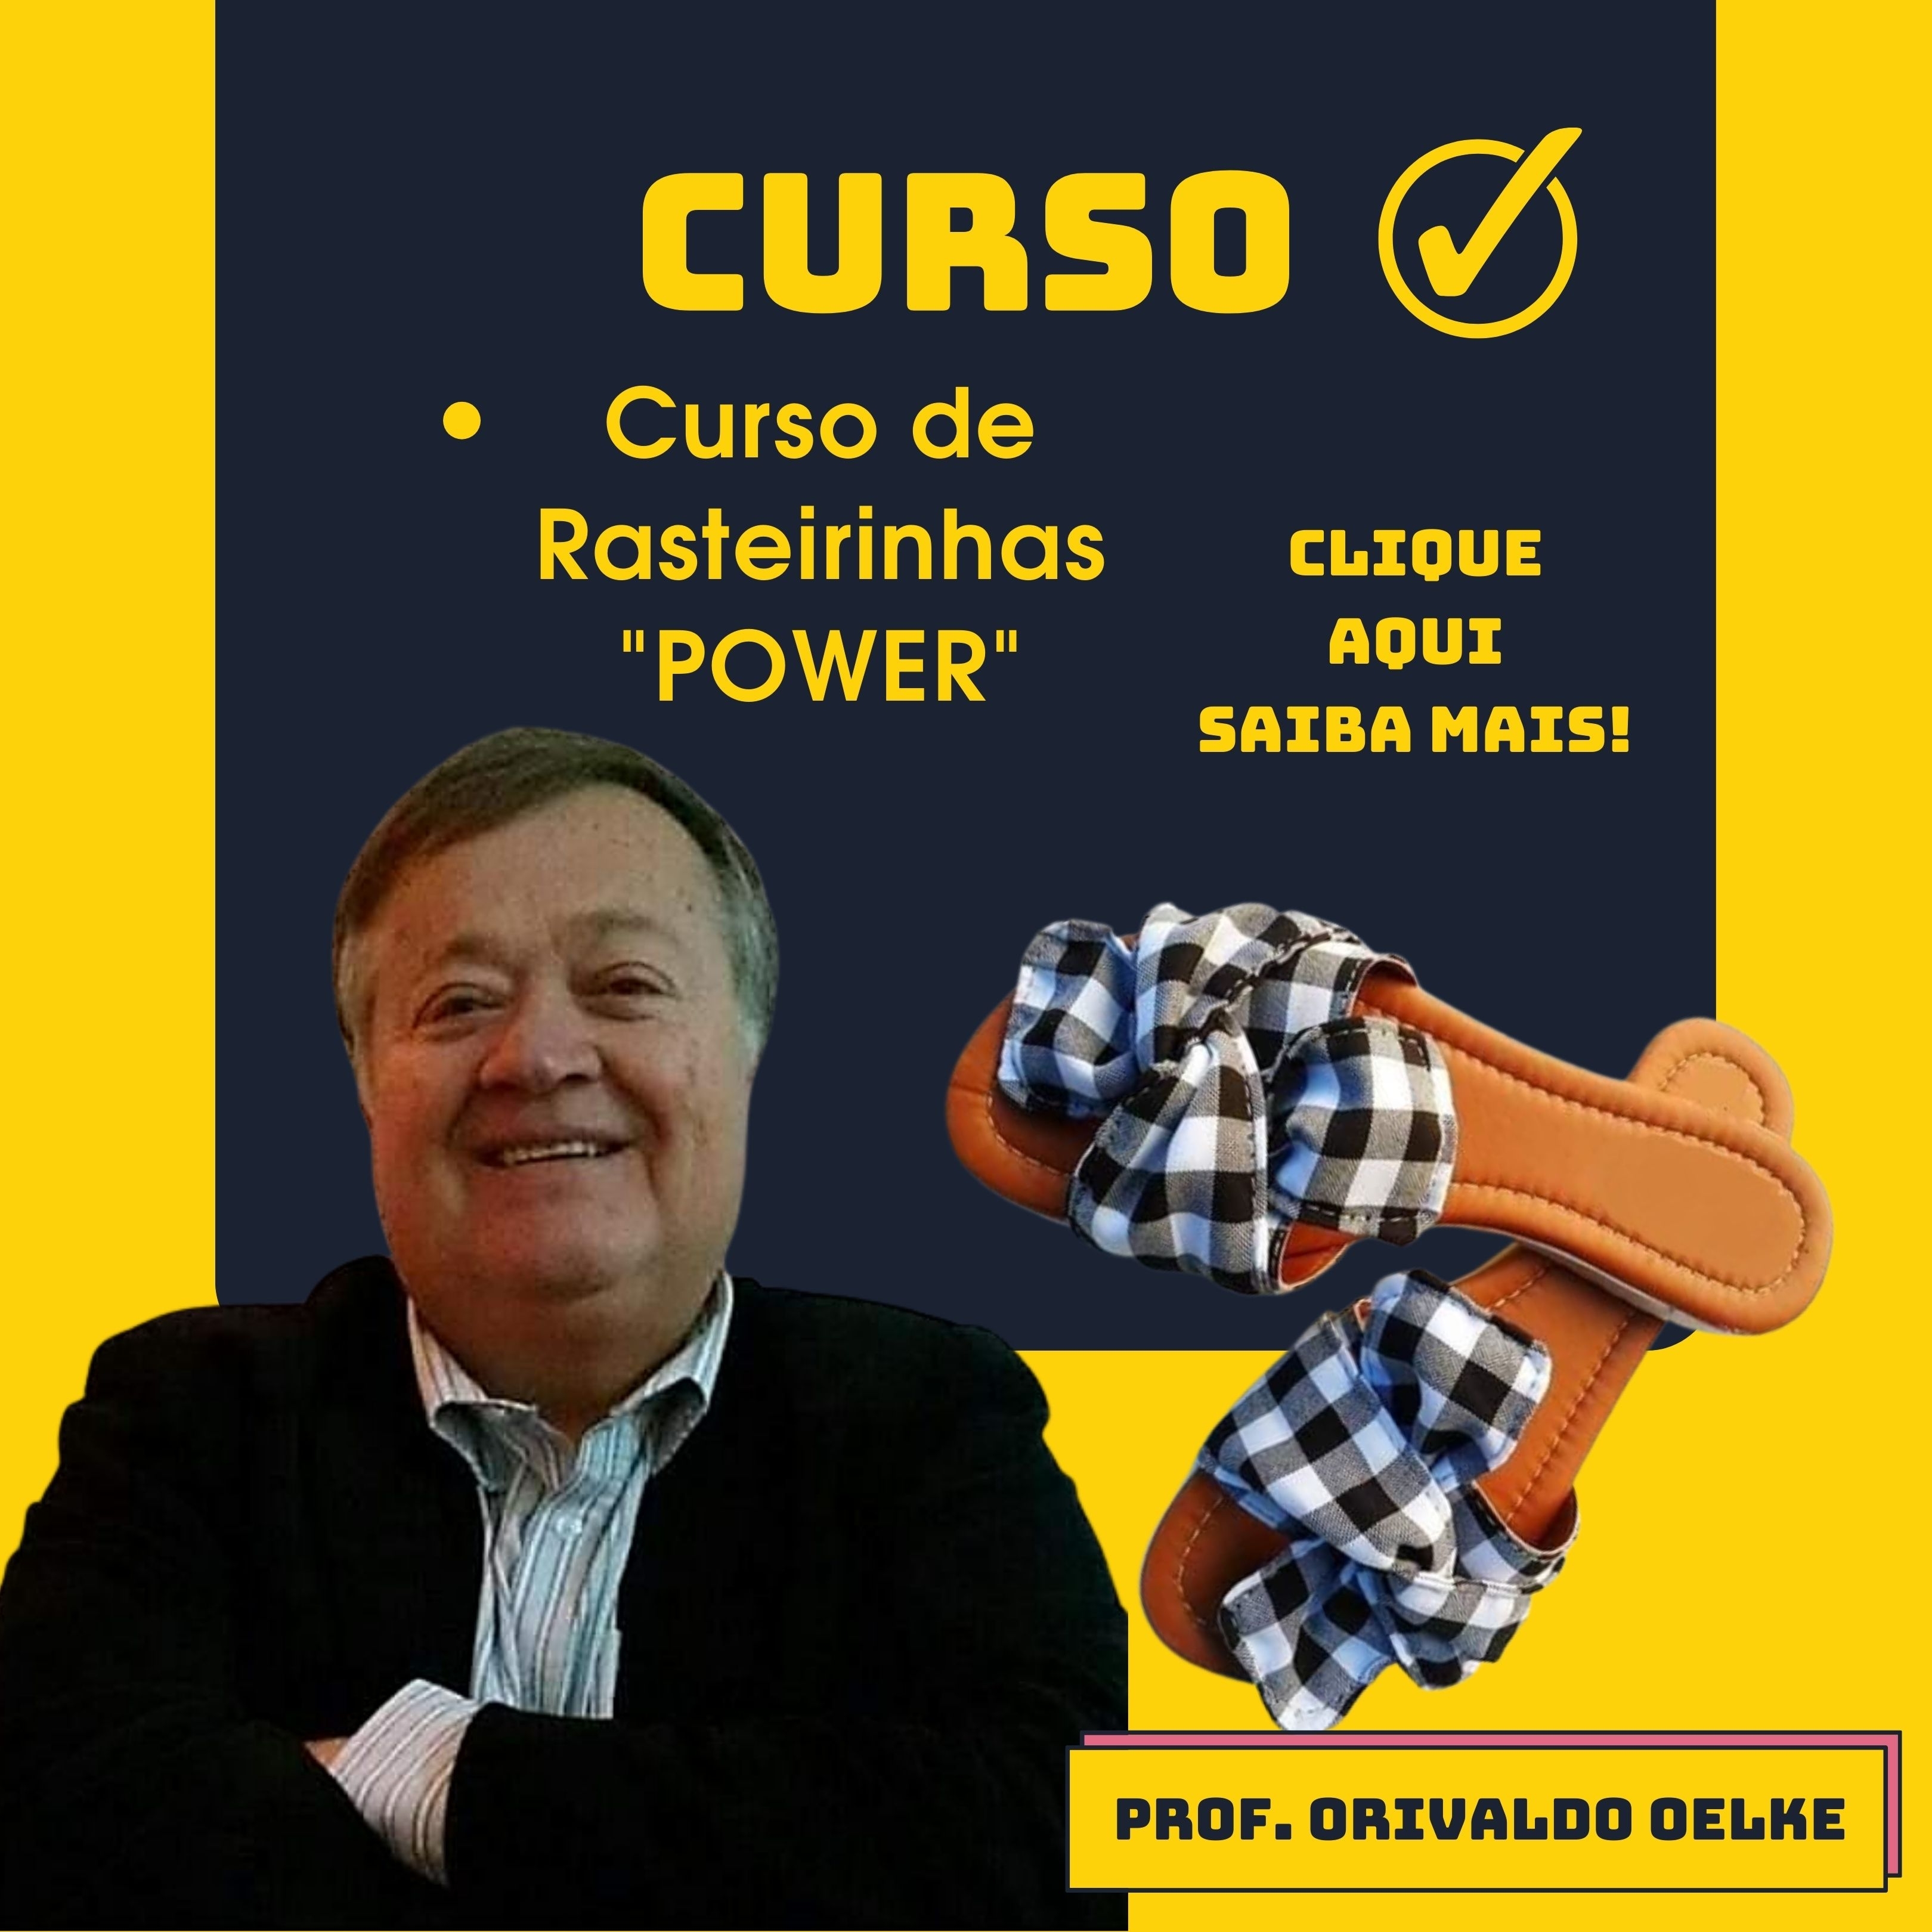  Curso Rasteirinhas "POWER" Prof. Orivaldo Oelke